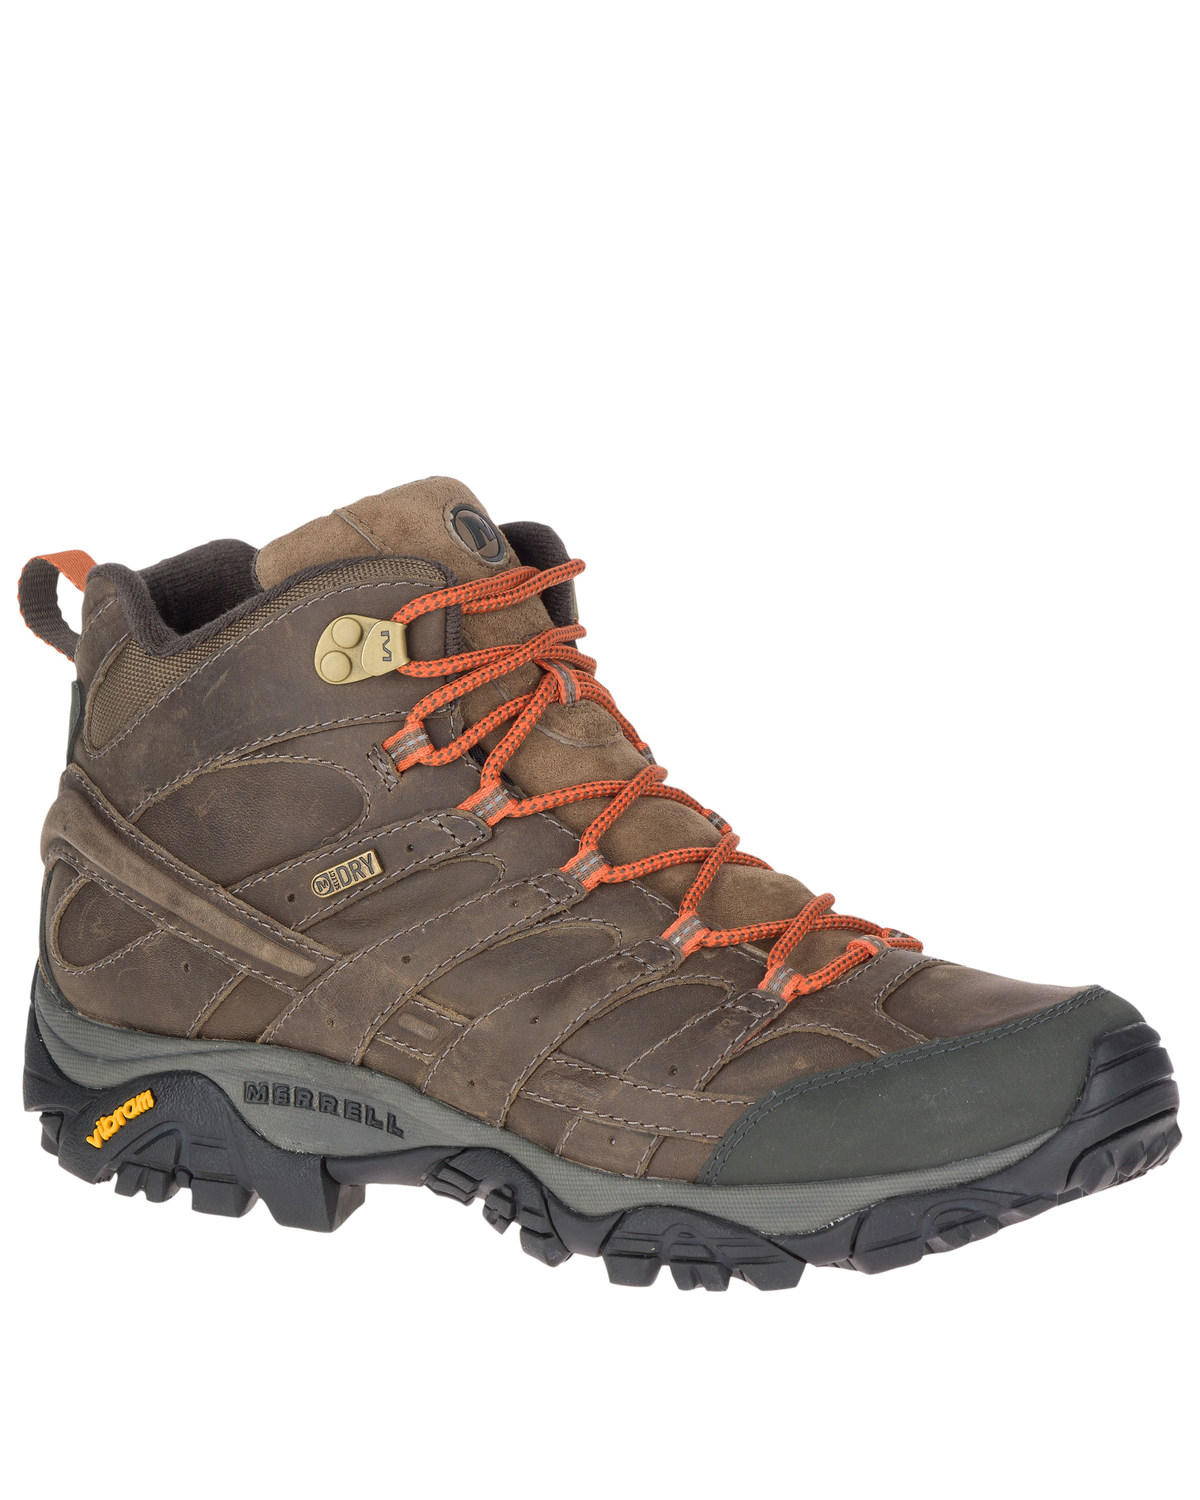 Merrell Men's MOAB 2 Prime Hiking Boots - Soft Toe